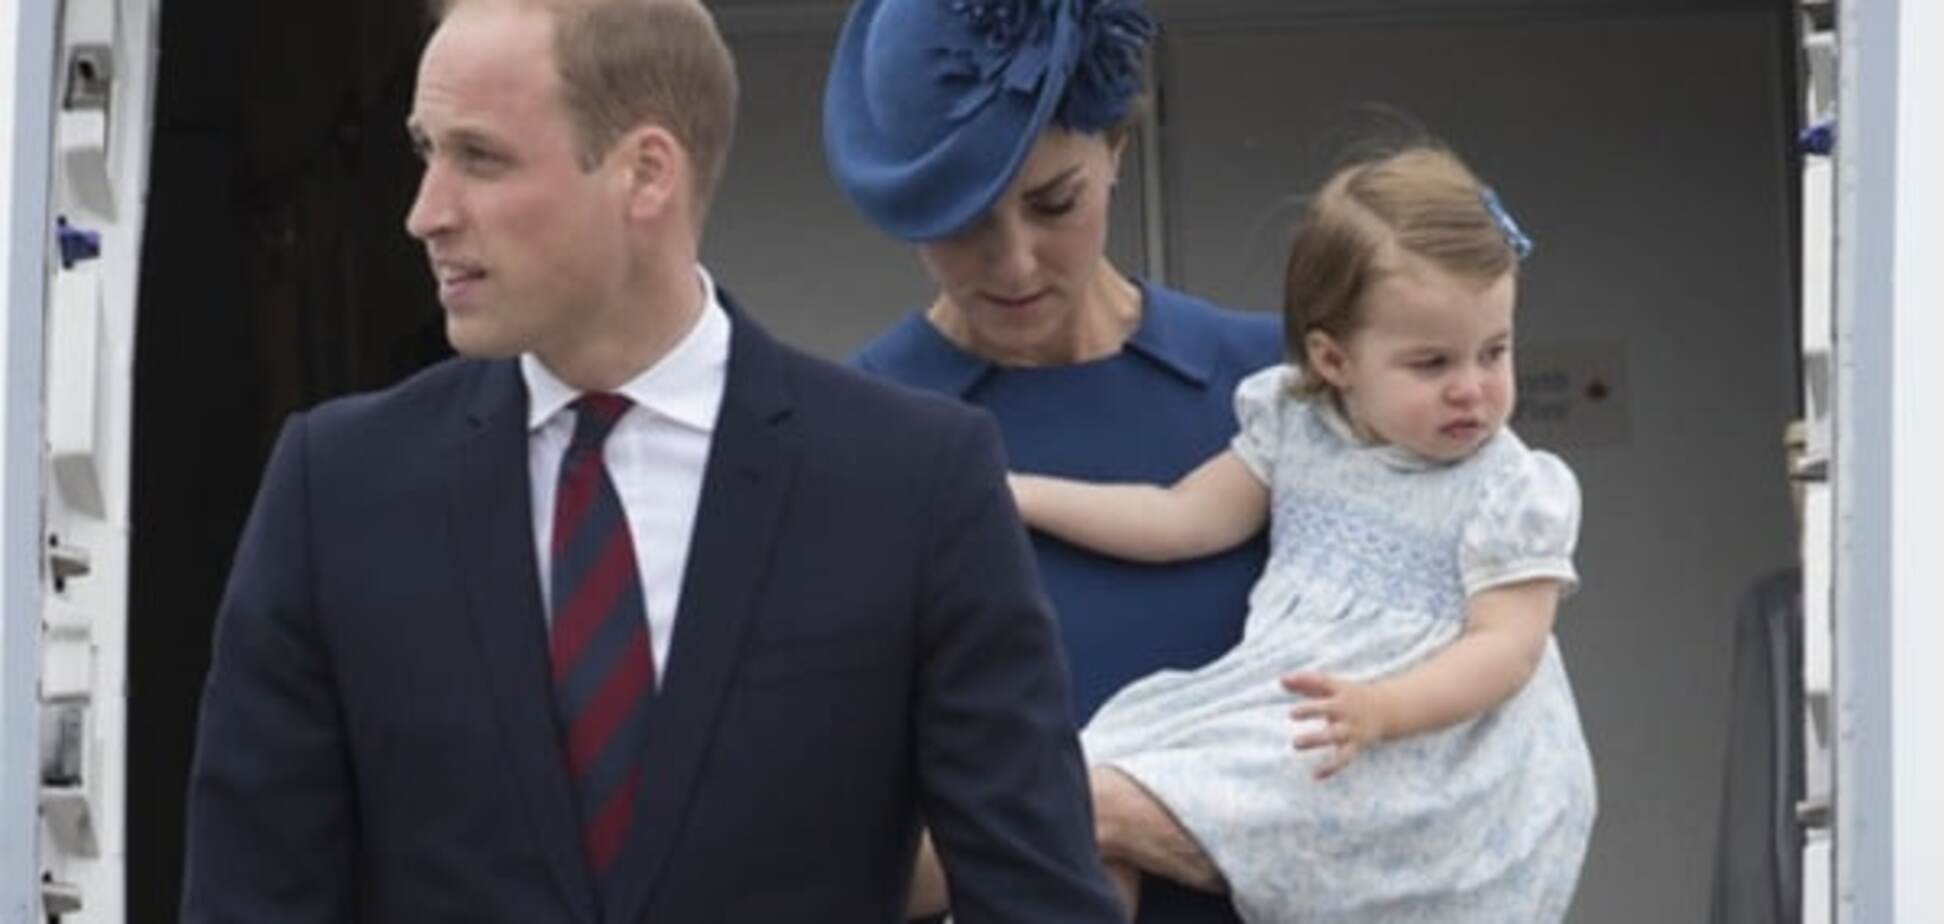 Впервые взяли детей в официальную поездку: принц Уильям с женой прибыли в Канаду. Опубликованы фото